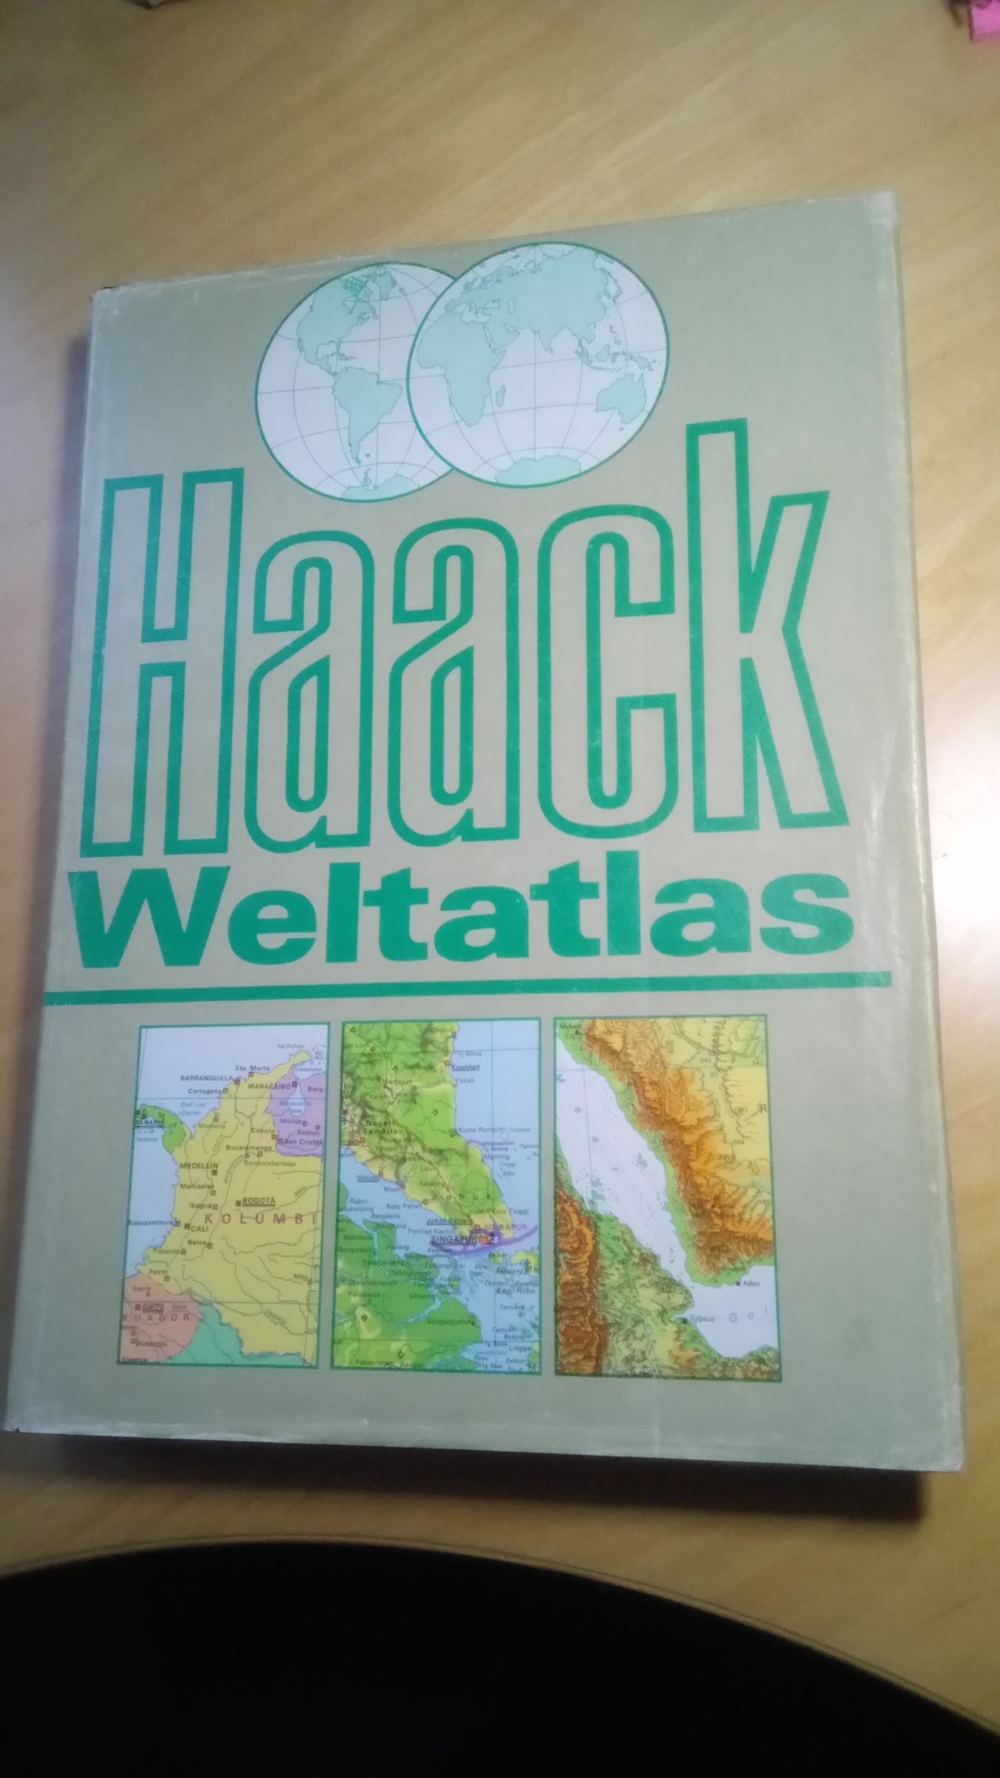 Weltatlas - Haack